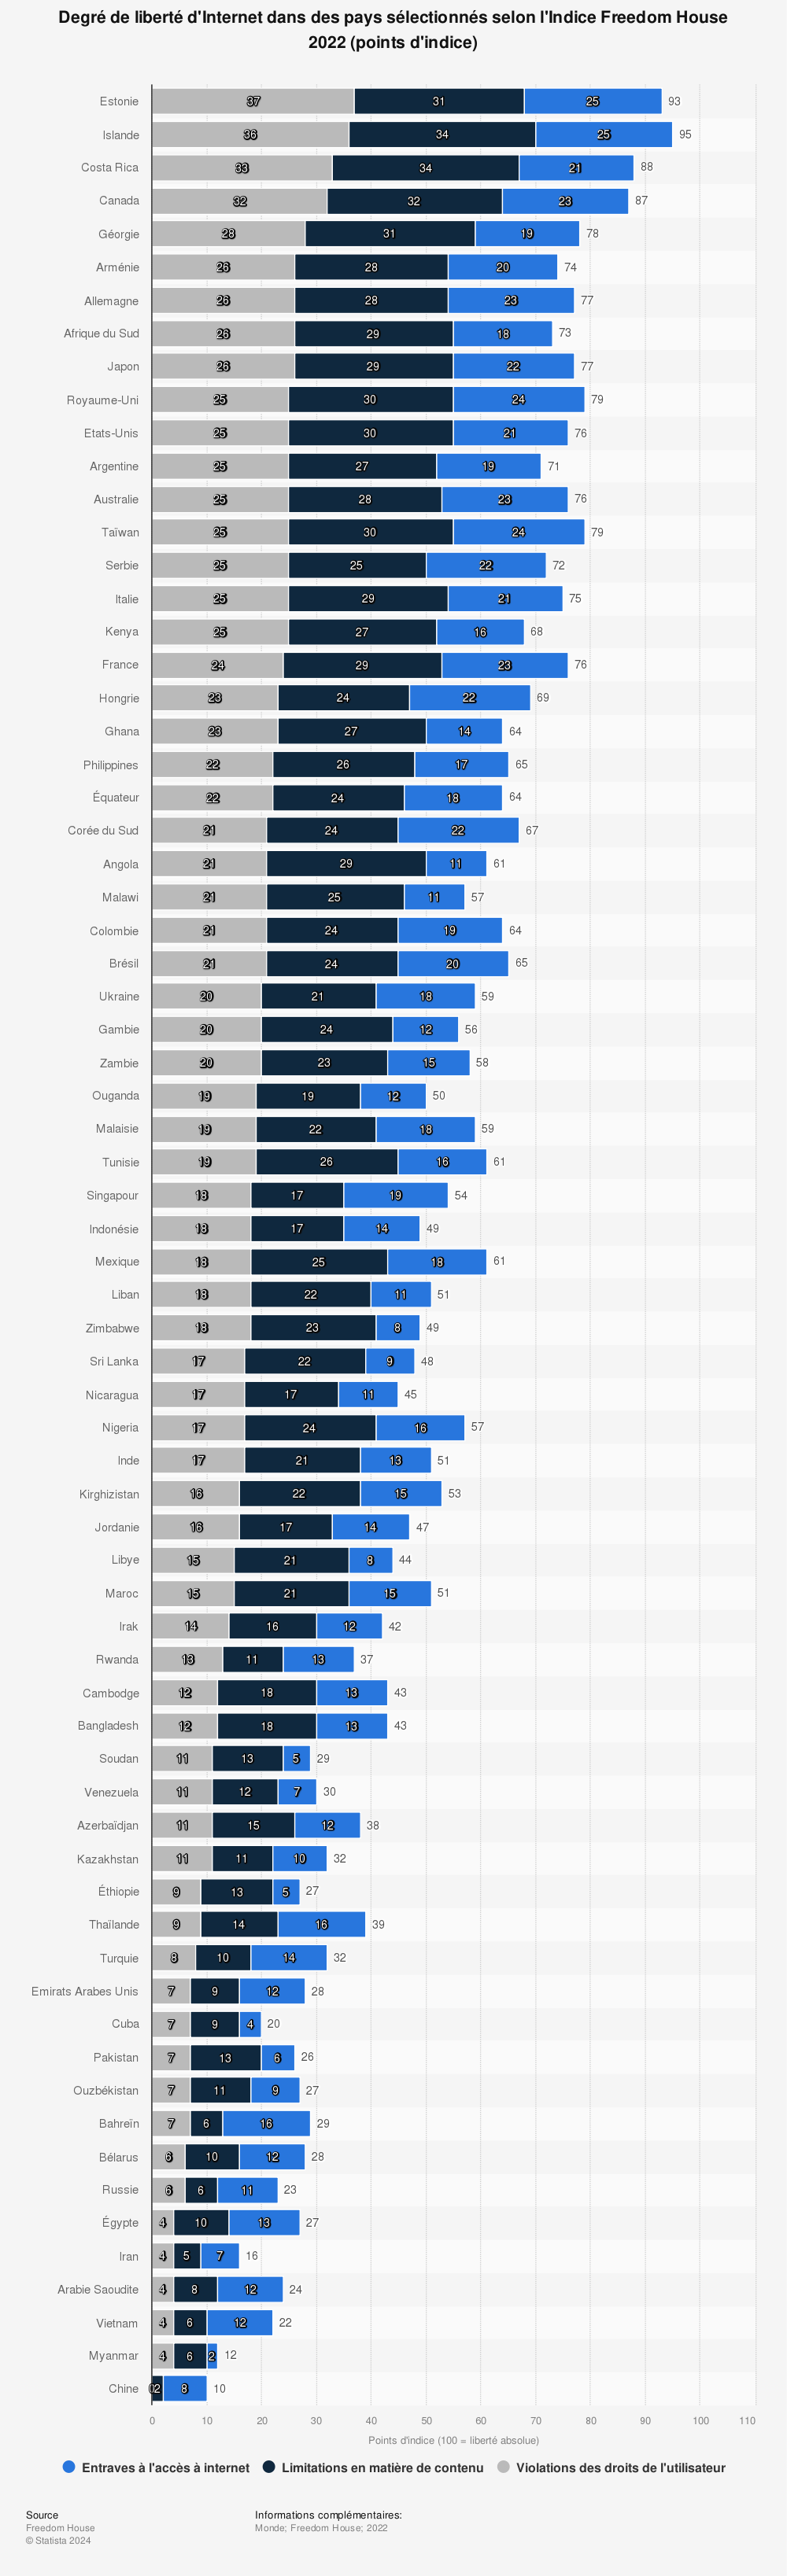 Statistique: Degré de liberté d'Internet dans des pays sélectionnés selon l'Indice Freedom House 2015 (points d'indice) | Statista